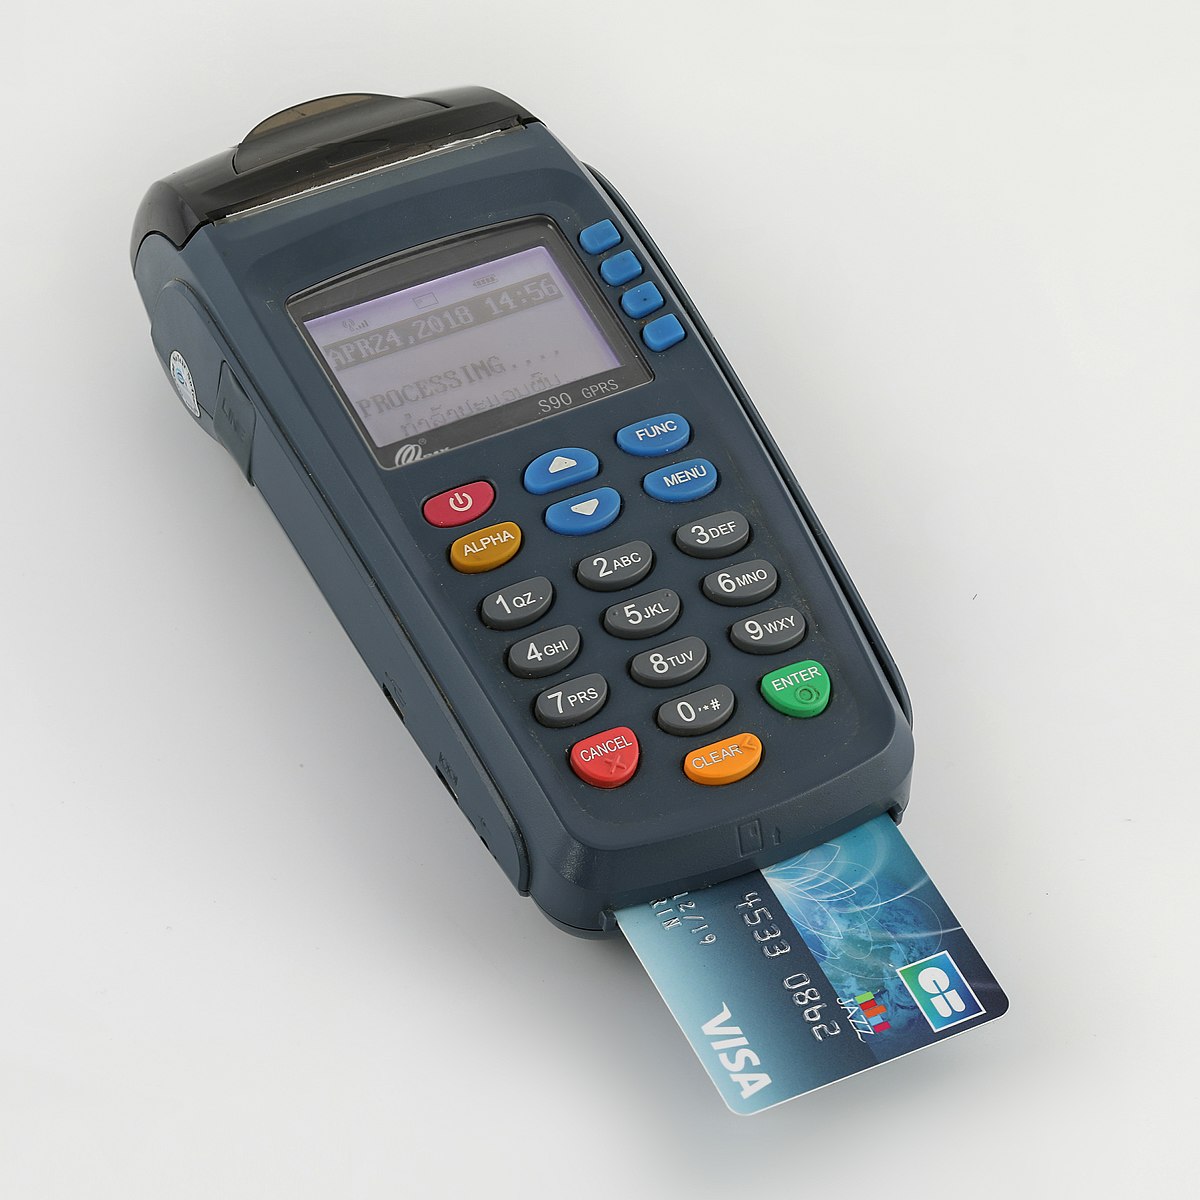 elavon credit card machine instructions